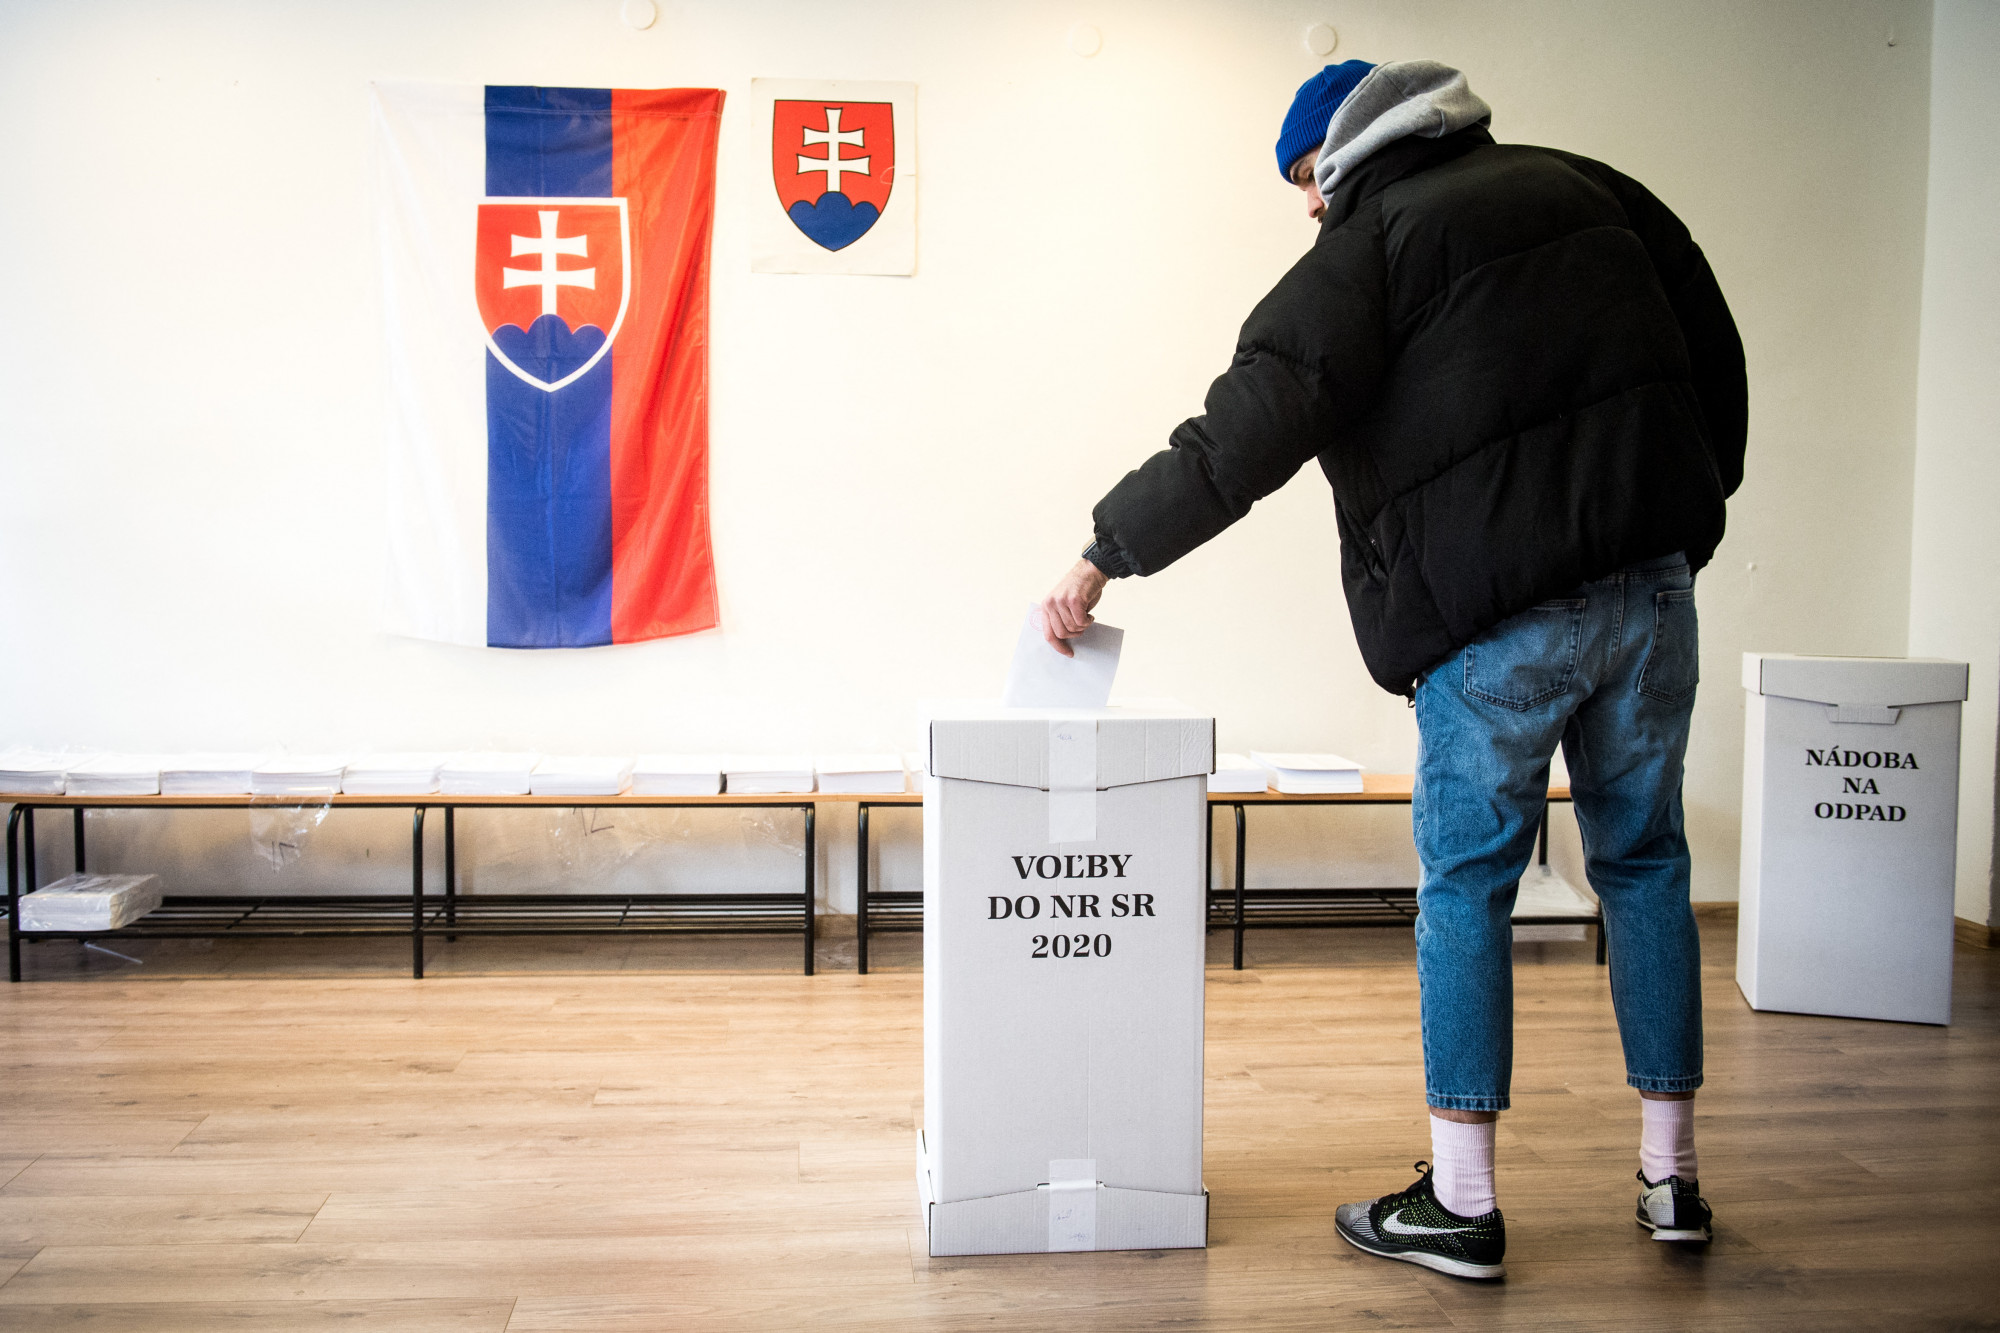 Alkotmánymódosításról tartanak népszavazást Szlovákiában